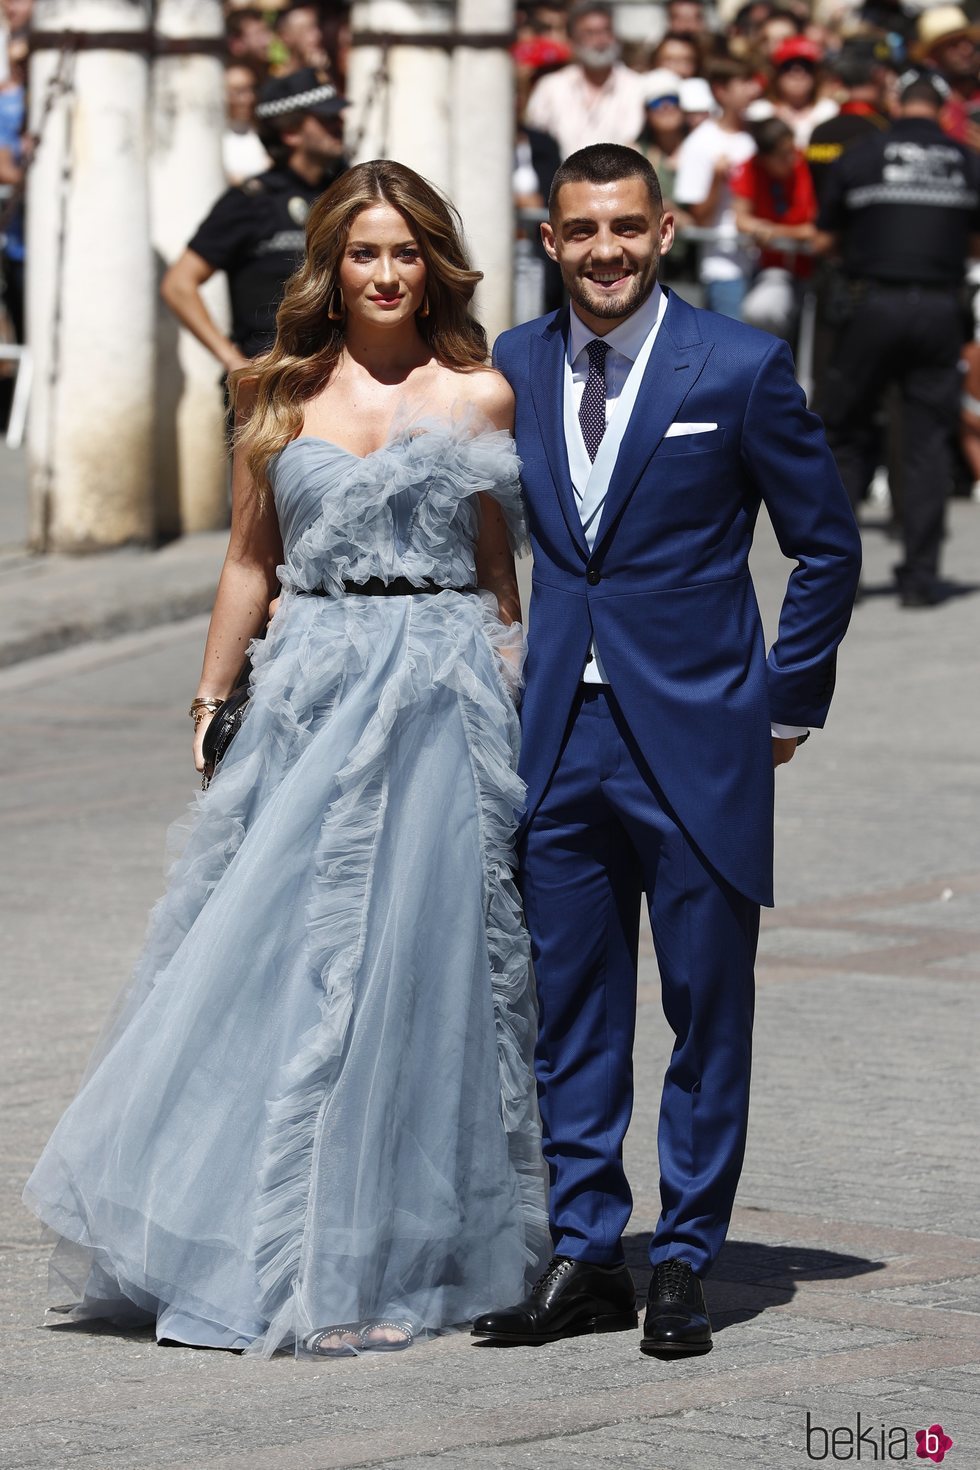 Mateo Kovacic y su mujer Izabel Kovacic a su llegada a la boda de Pilar Rubio y Sergio Ramos